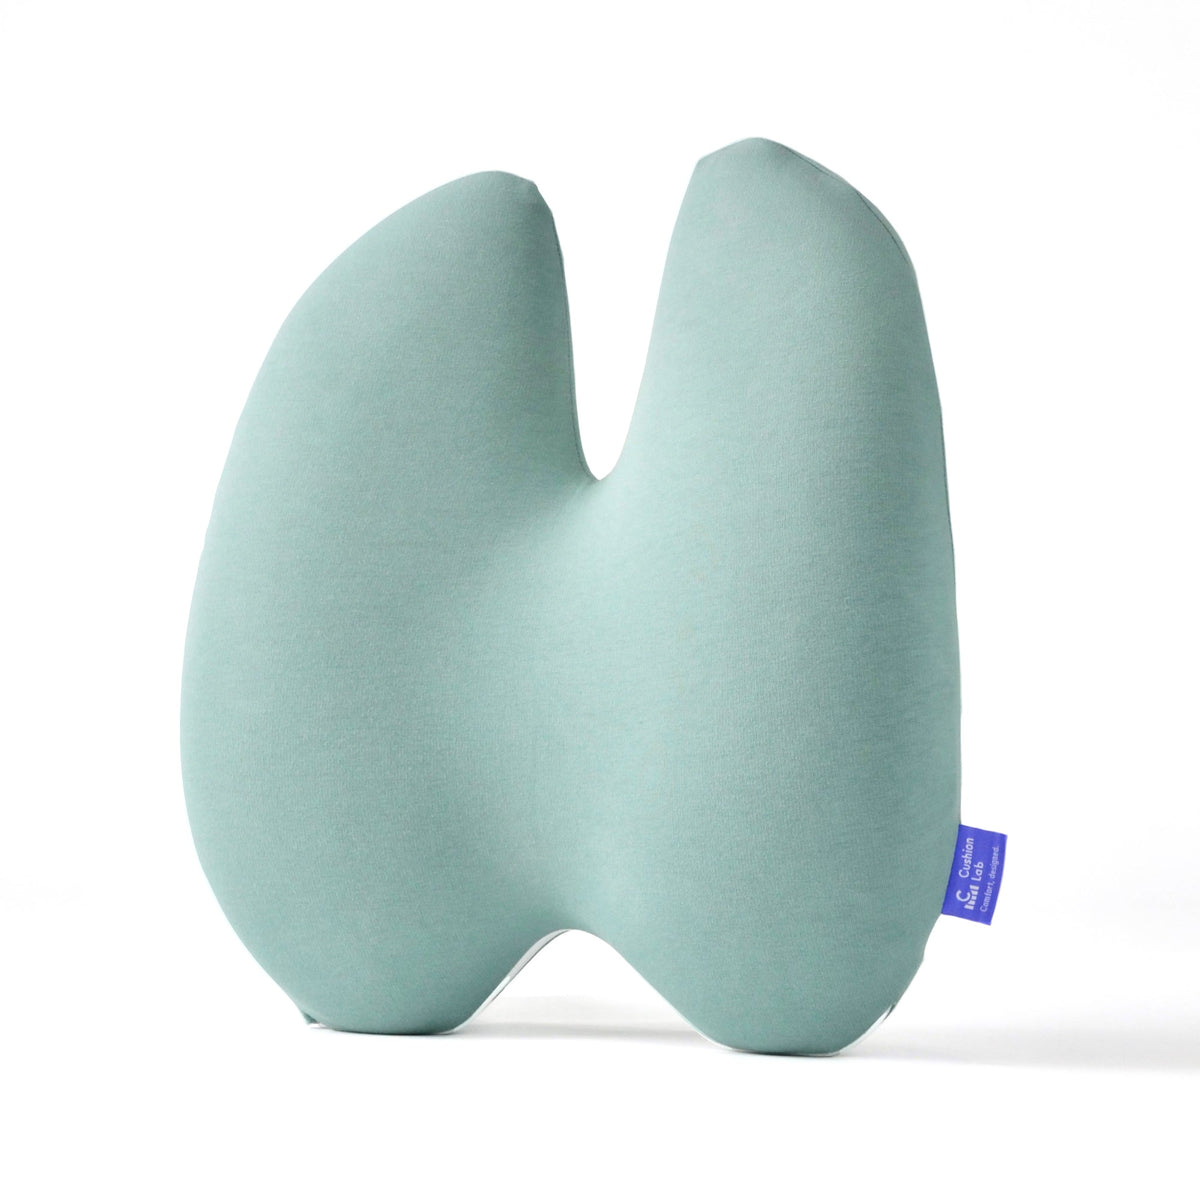 Extra Support Ergonomic Lumbar Pillow | Cushion Lab